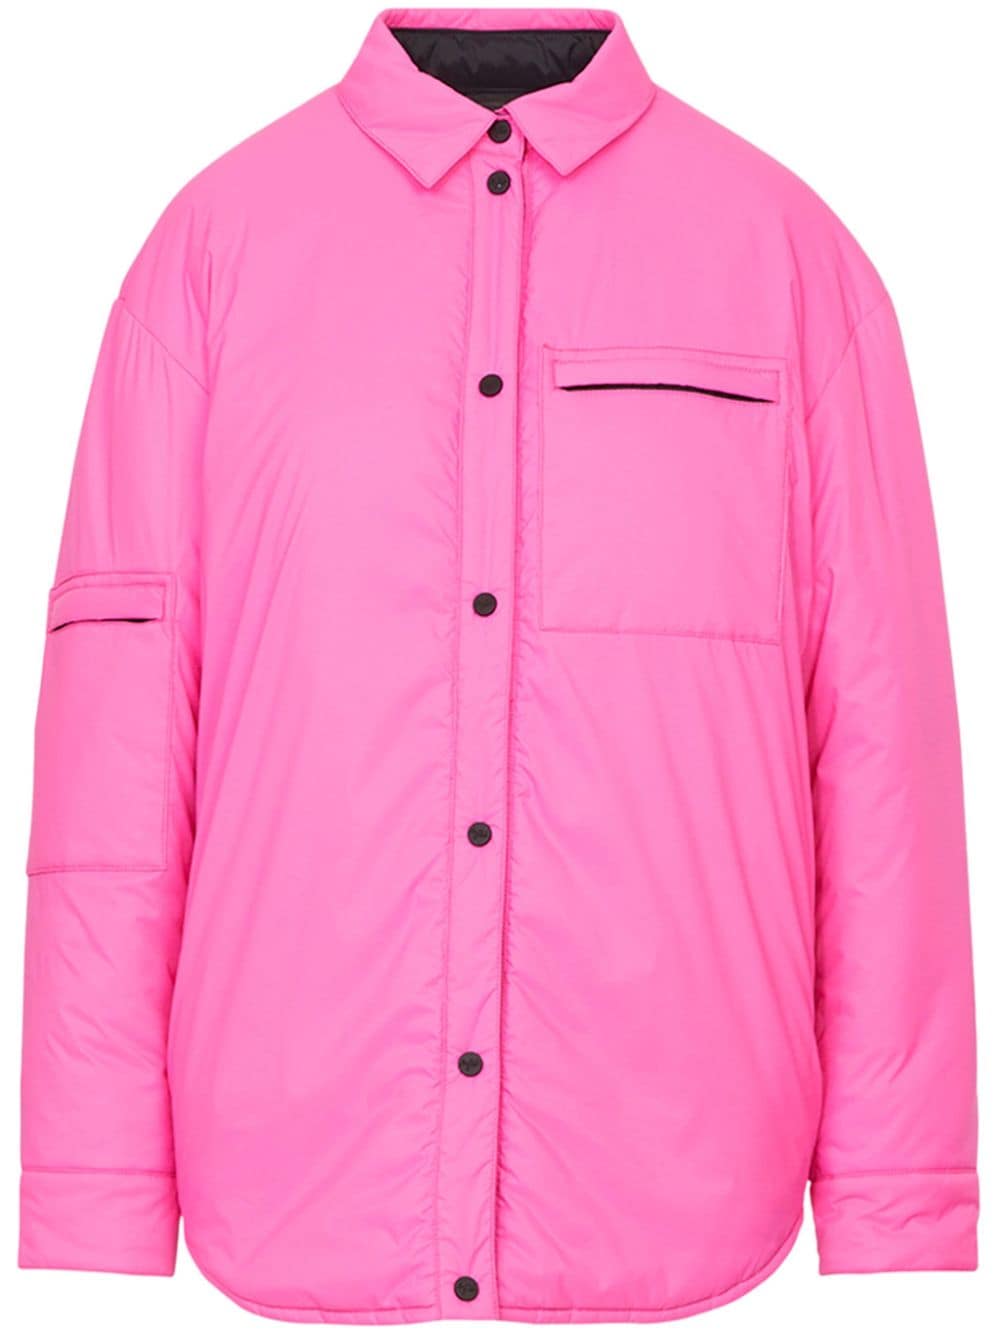 Image 1 of Aztech Mountain Pillow puffer shirt jacket